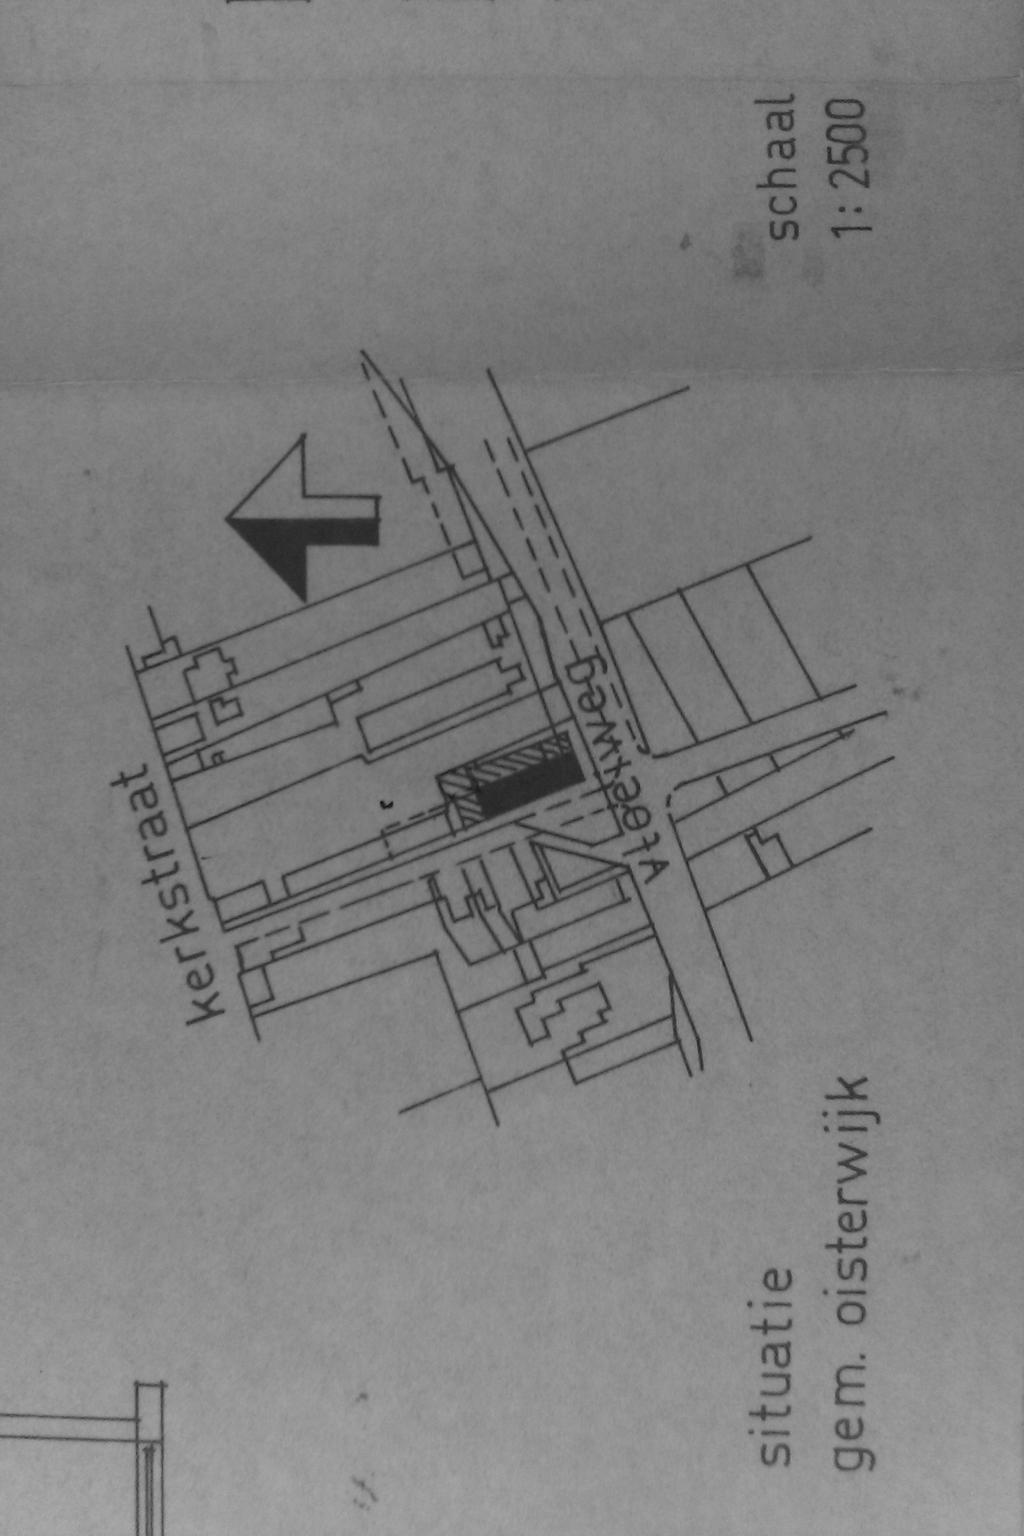 Afbeelding 4 Uitbreidingsplan van de uitbouw van het bedrijfsgebouw op Rode